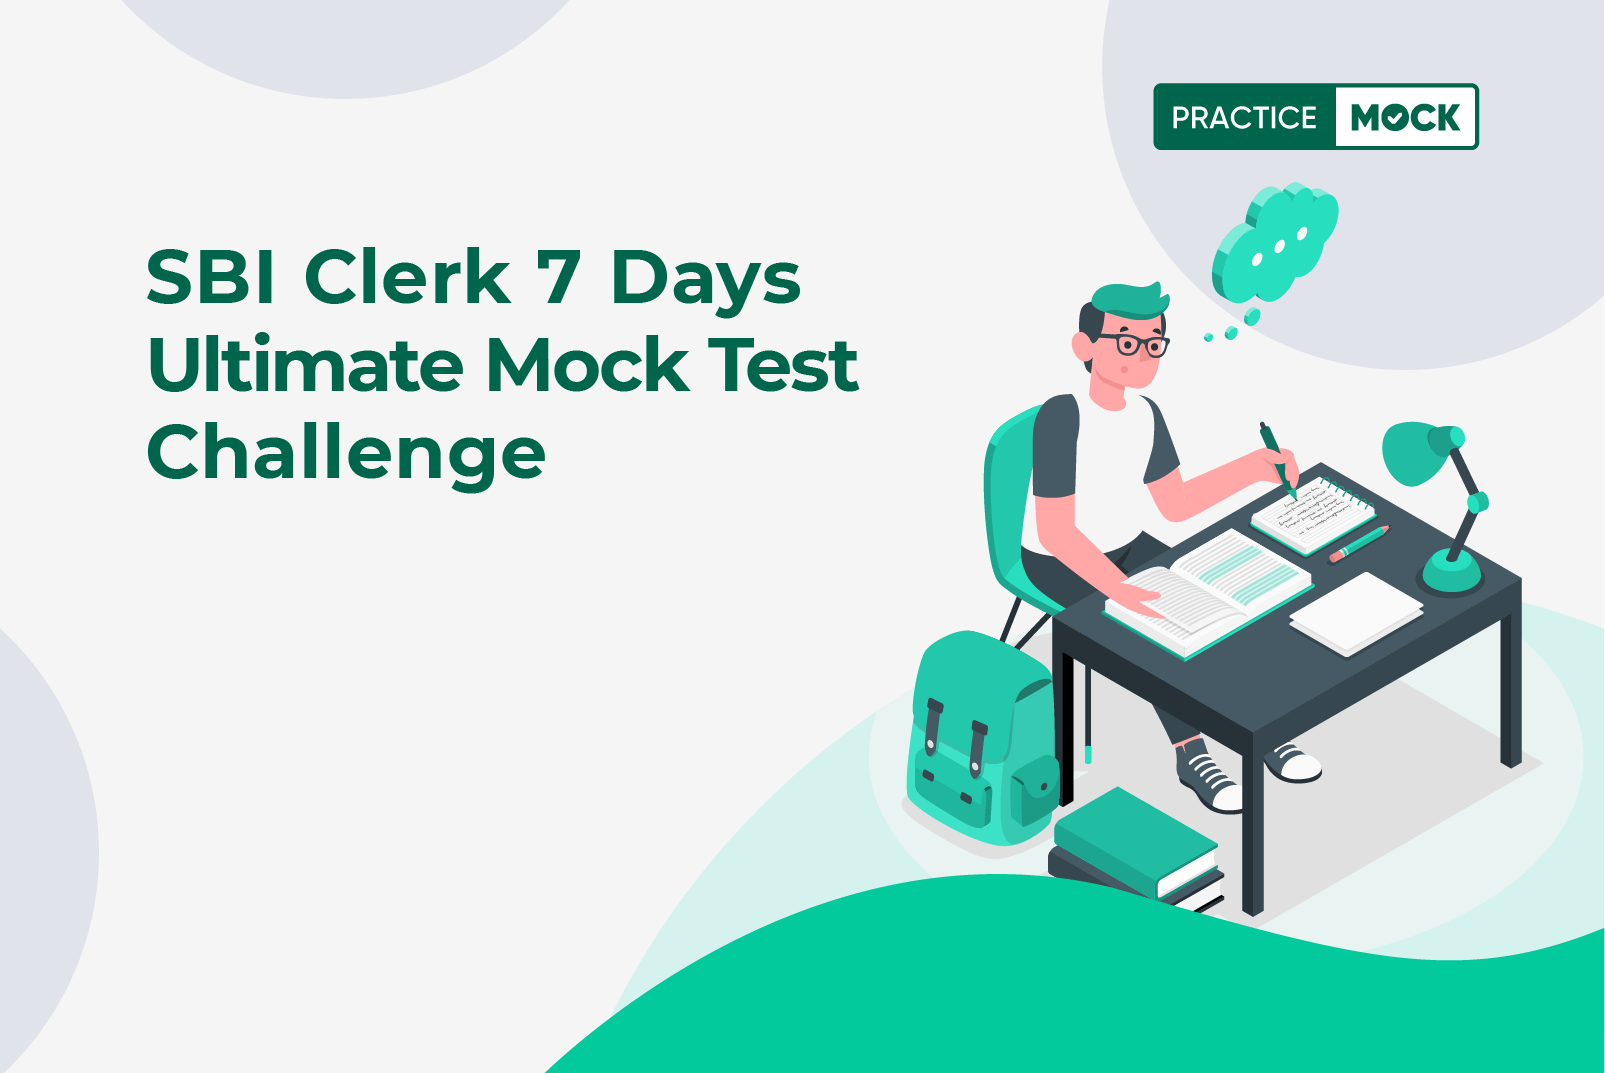 SBI Clerk 7 Days Ultimate Mock Test Challenge